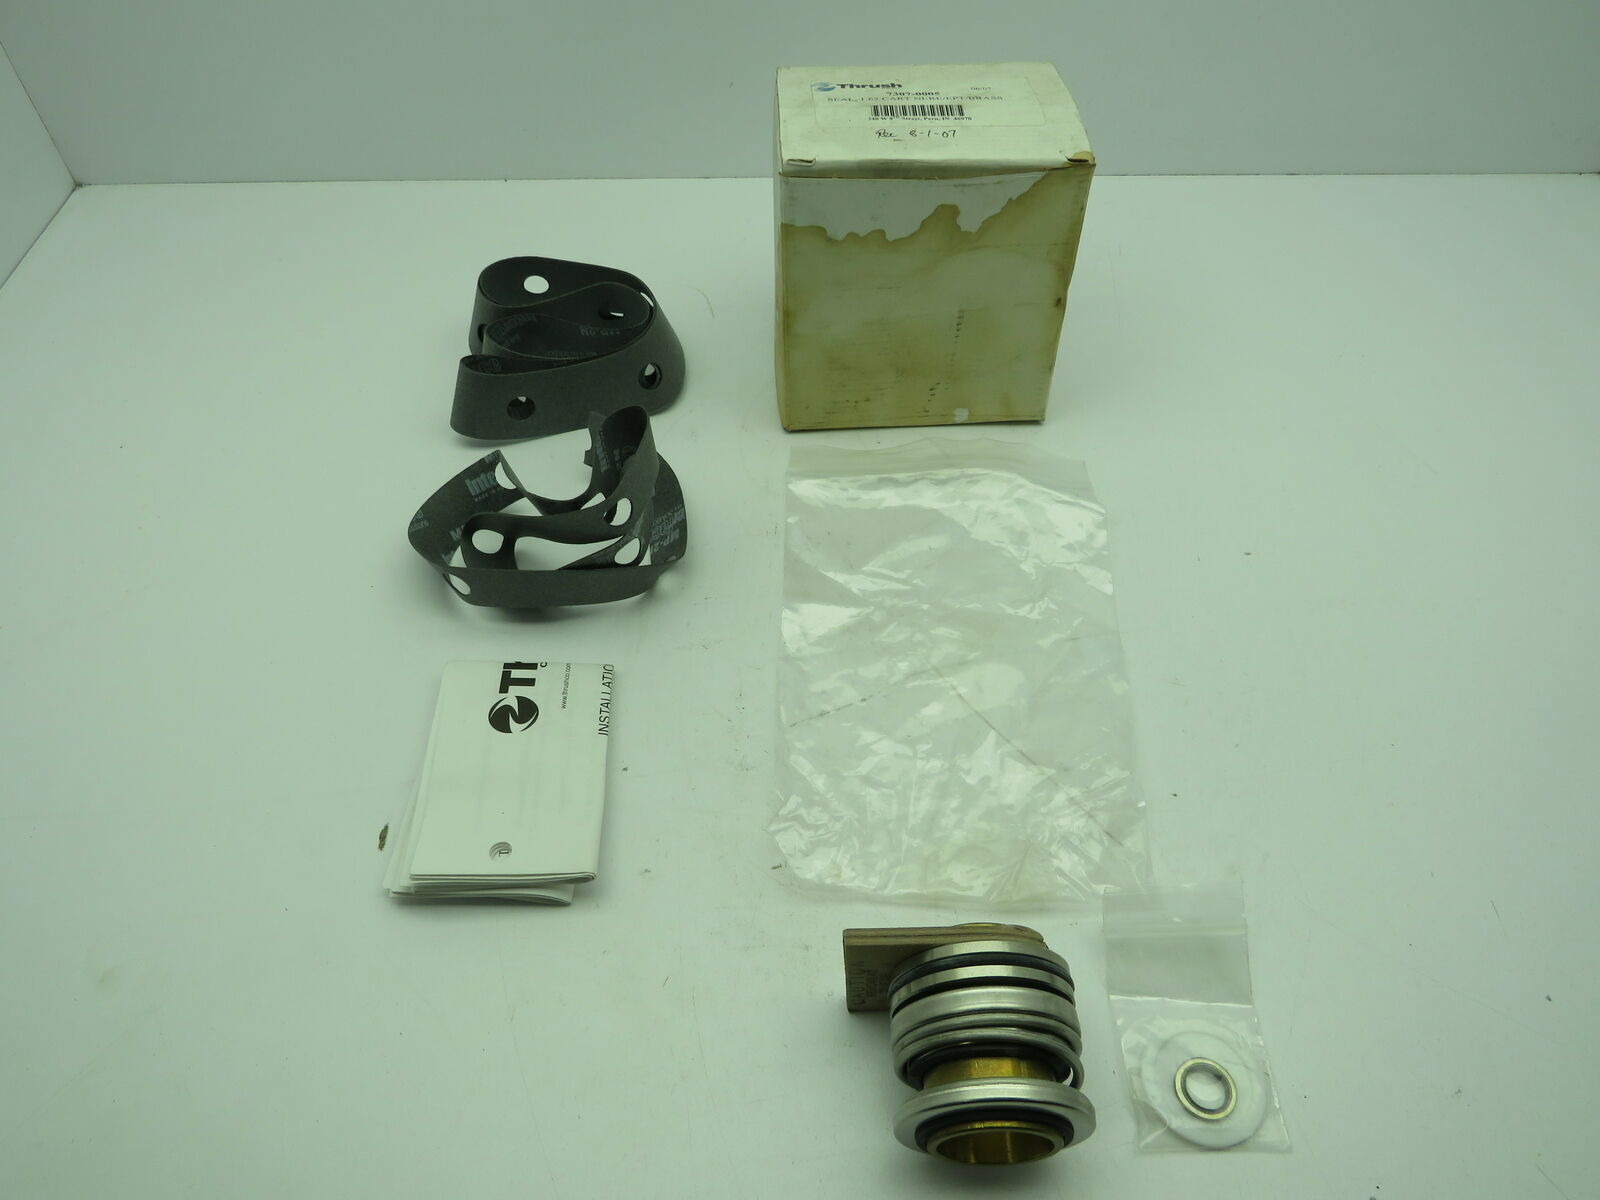 Thrush 7307-0005 Amtrol Bearing Assembly Seal Kit 1.62 Cart NI-RE/EPT/Brass